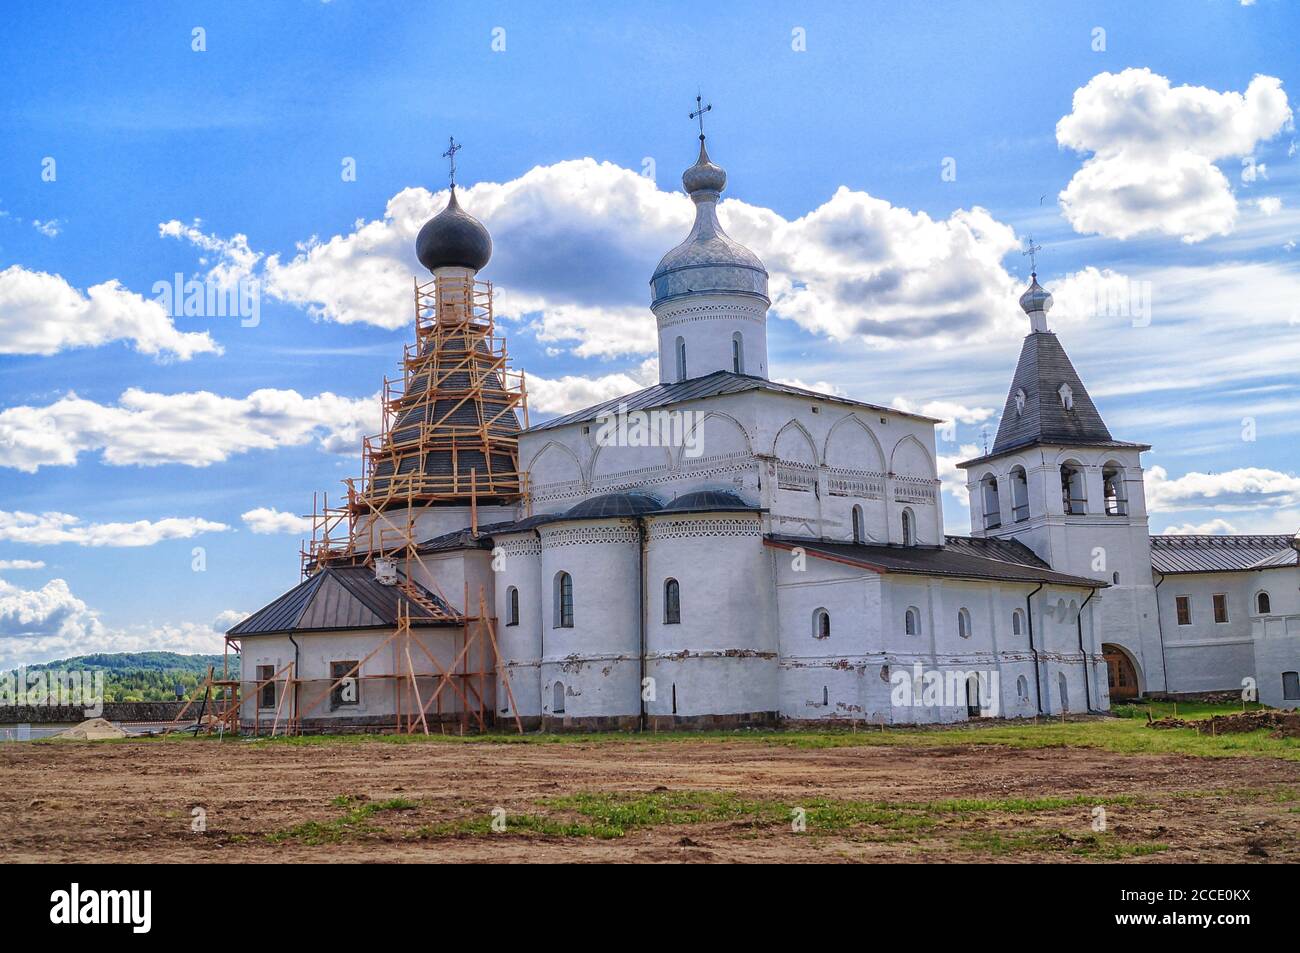 Russland, Wologda Region, Ferapontow Belosersky Kloster - Juni 13.2014 : Kloster der Russischen Orthodoxen Kirche. Russische Touristenattraktion. Stockfoto